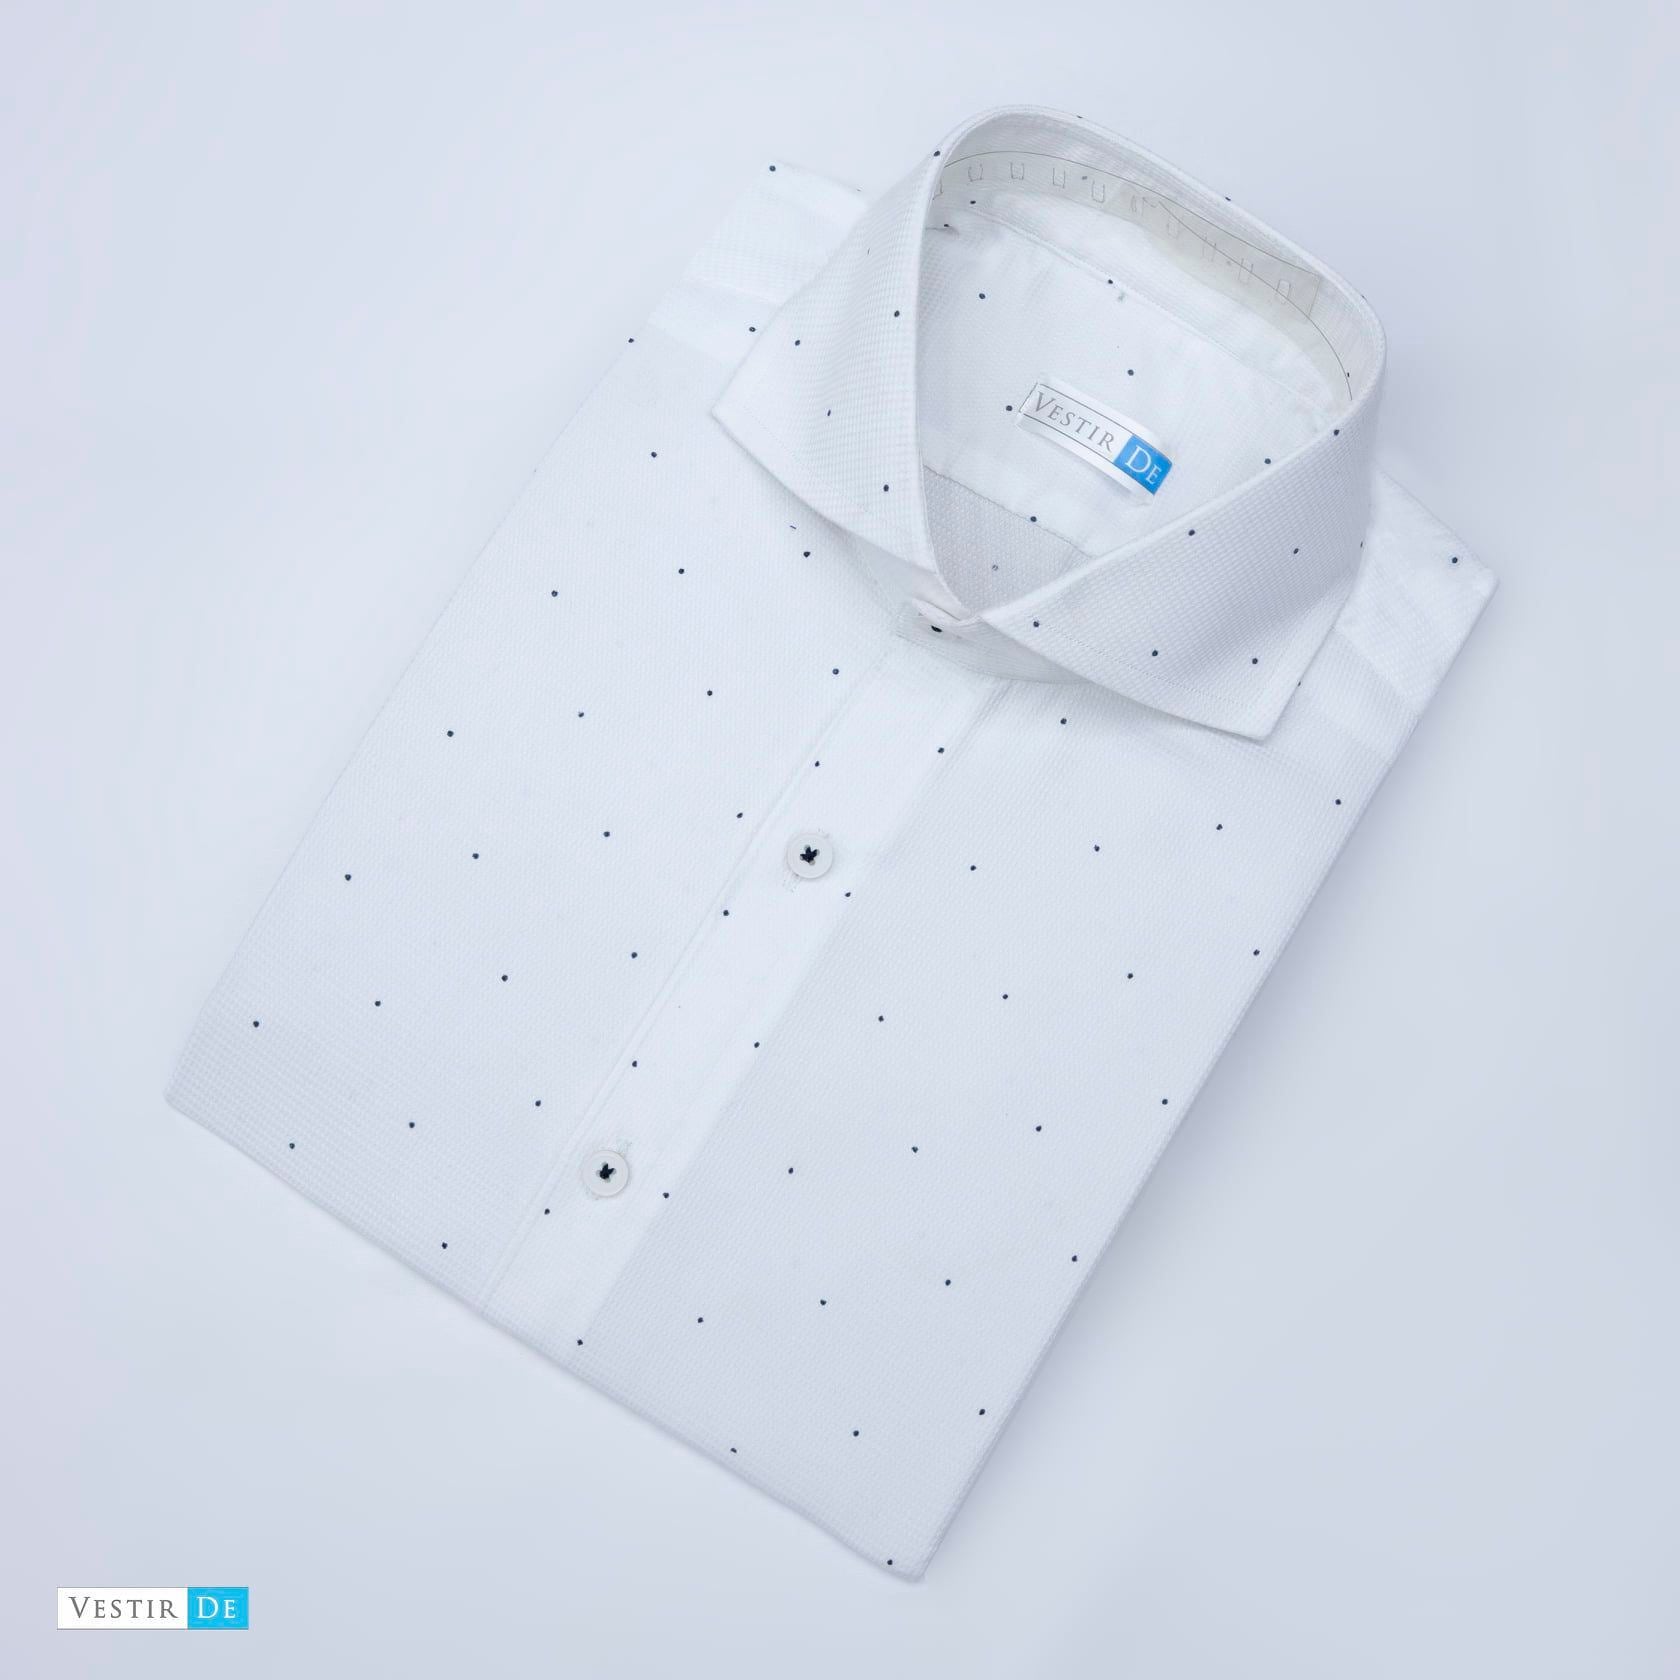 White Textured Polka Dot Shirt